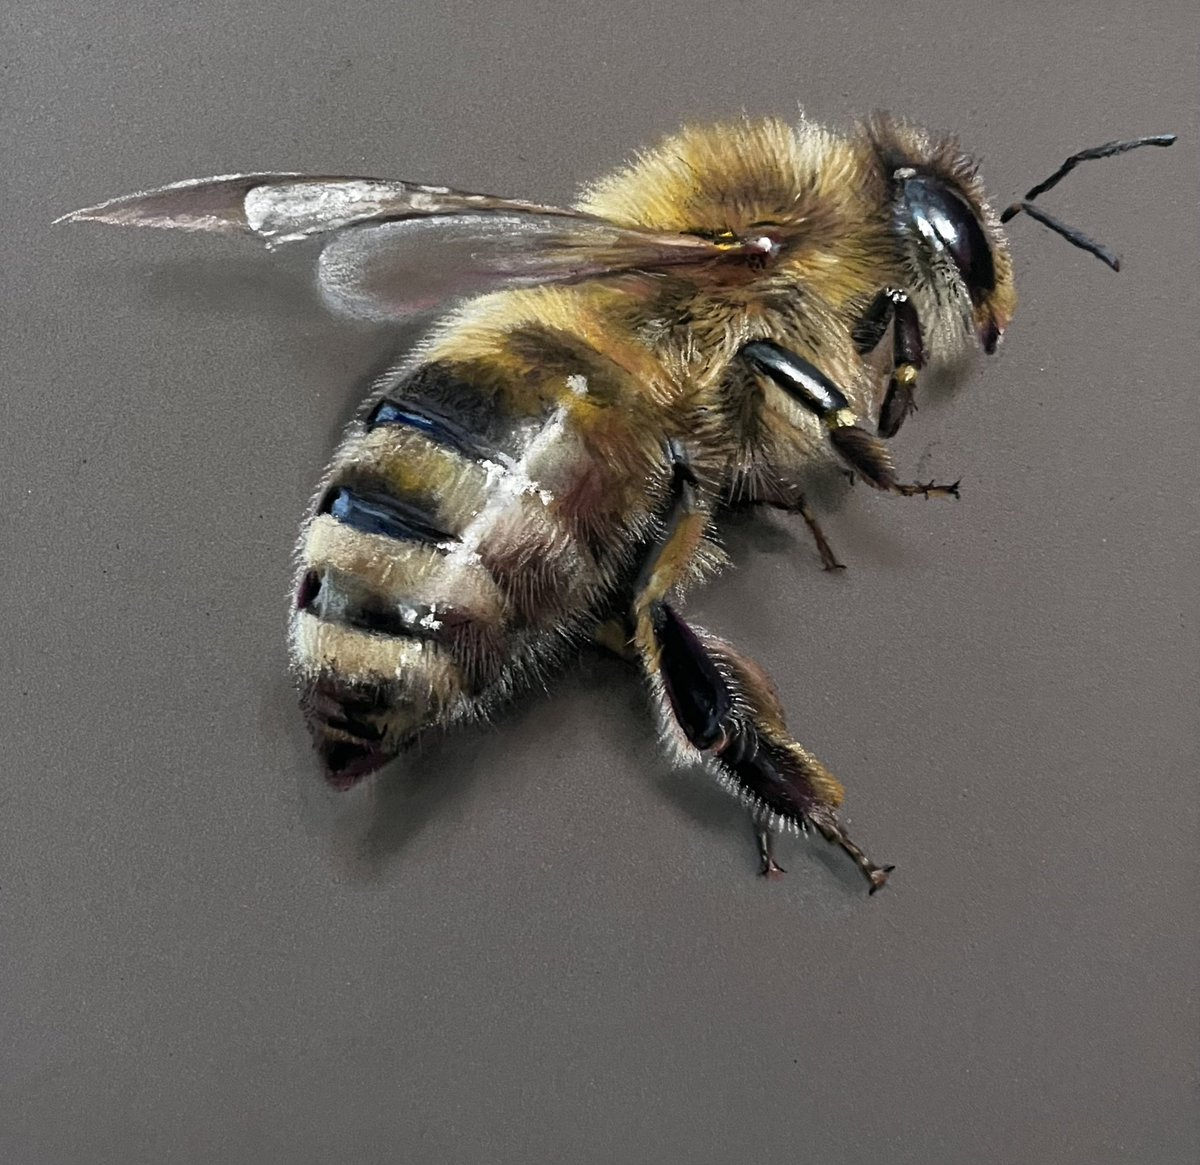 Dead honey bee. Pastel pencils and soft pastel on pastelmat. Have a great weekend everyone. 🐝 #art #hyperrealism #drawing #bee #honeybee #sketches #drawings #artdrawings #beeart #arty #artsy #artist #animalart #drawdrawdraw #drawingart #pencils #pencilgram #arte #realistic